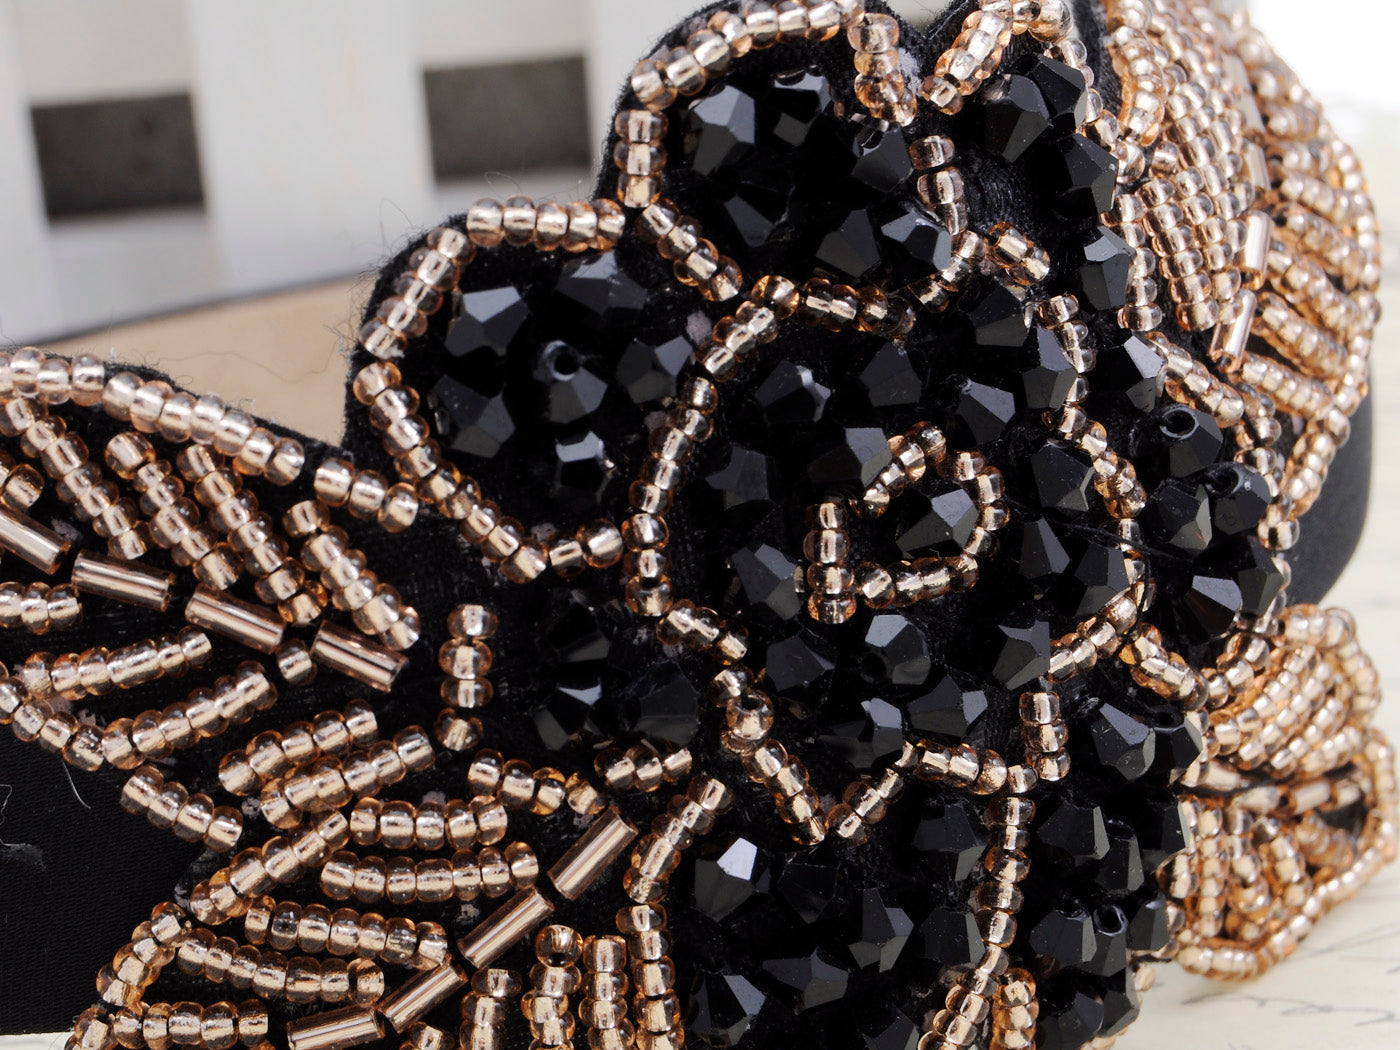 Intricate Design Single Black Bead Flower Bead Leaves Headband